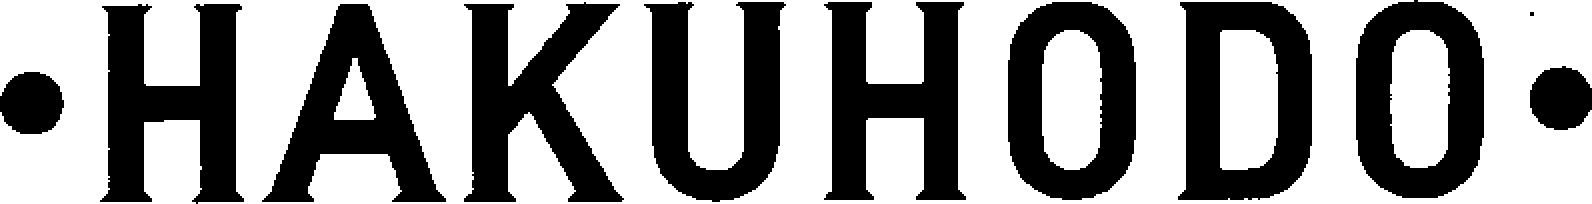 Trademark Logo ·HAKUHODO·